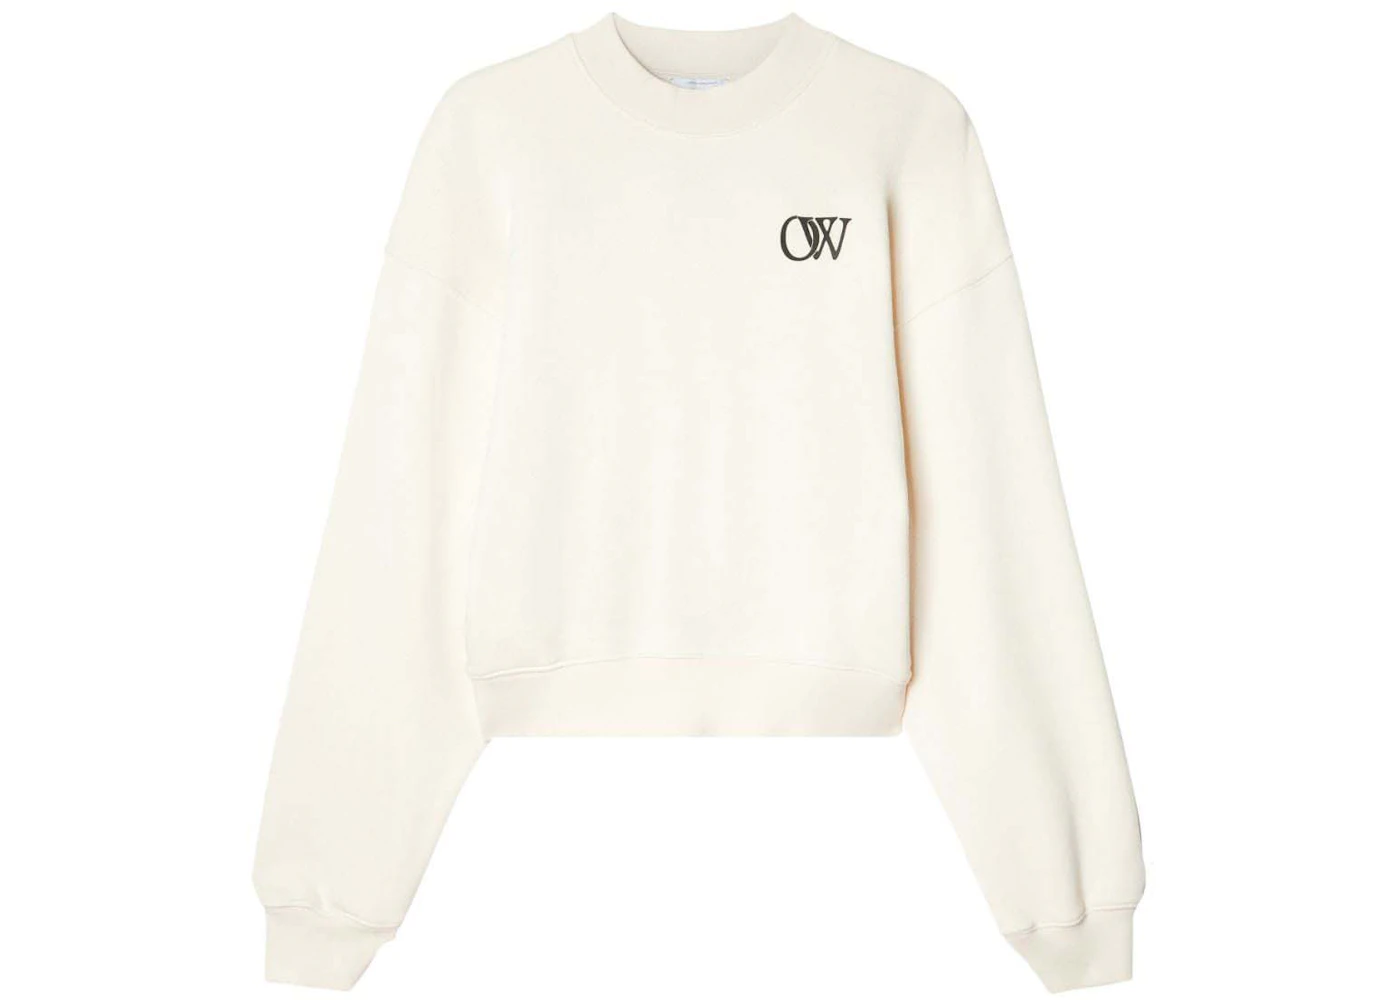 OFF-WHITE OW-Print Cotton Sweatshirt Cream White - FW23 - US